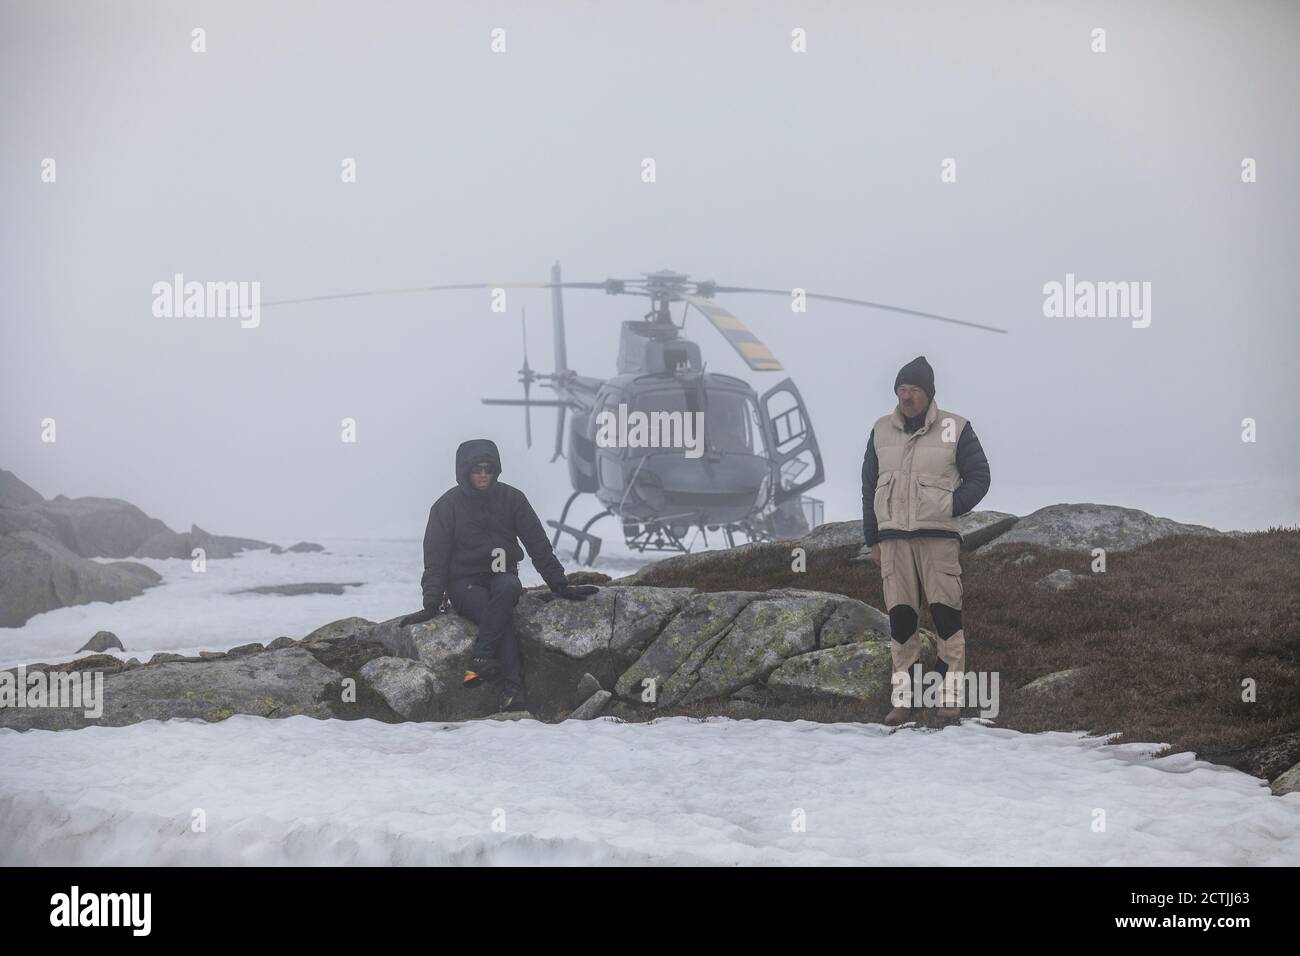 Il pilota dell'elicottero e il passeggero aspettano il miglioramento delle condizioni meteorologiche, in difficoltà. Foto Stock